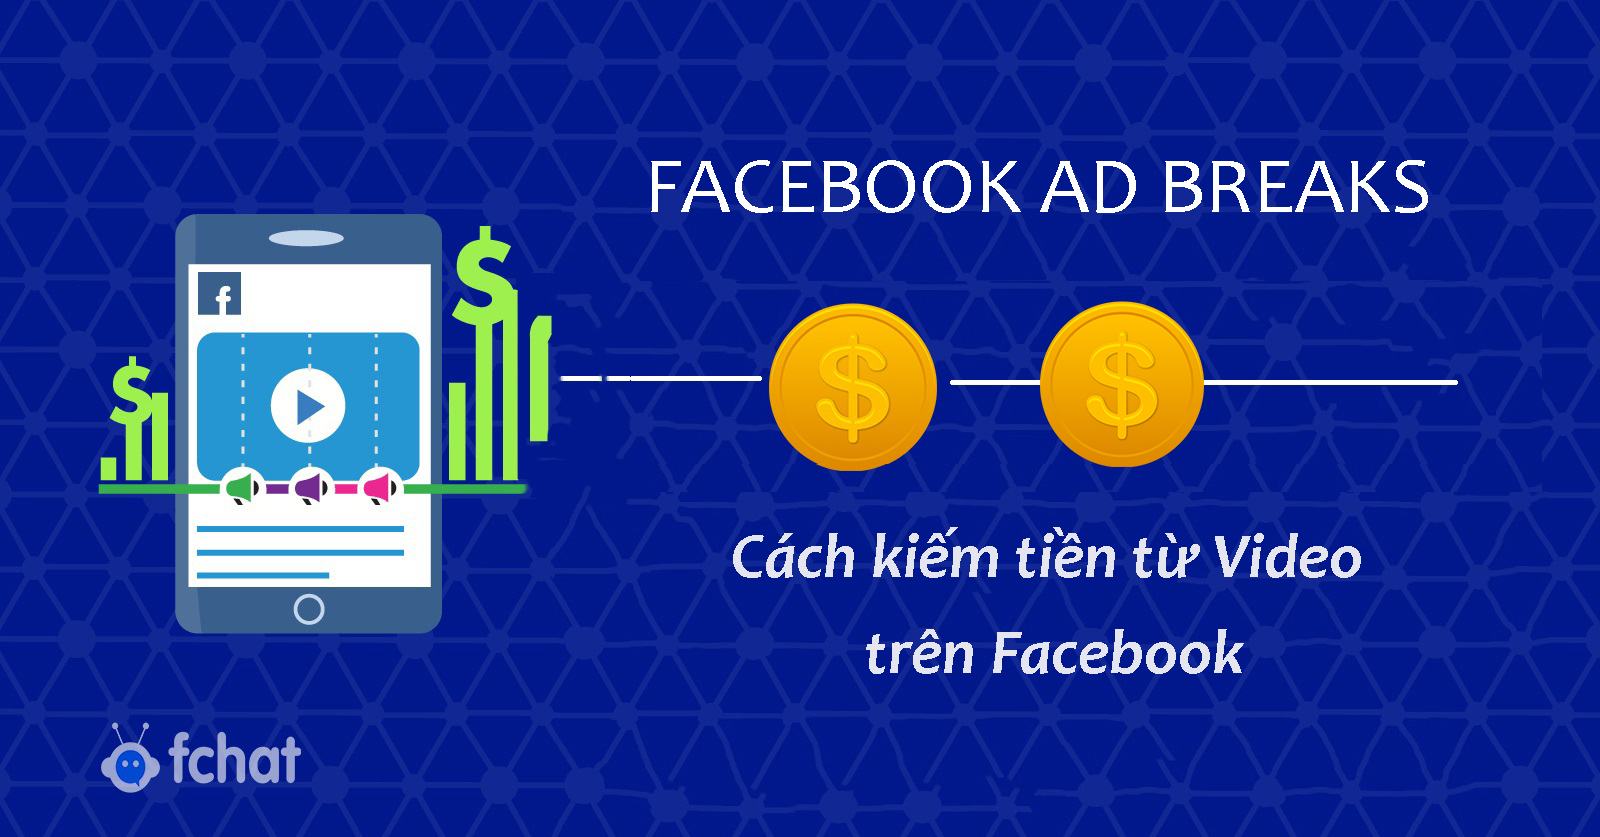 Facebook Ad Breaks: Cách kiếm tiền từ Video trên Facebook